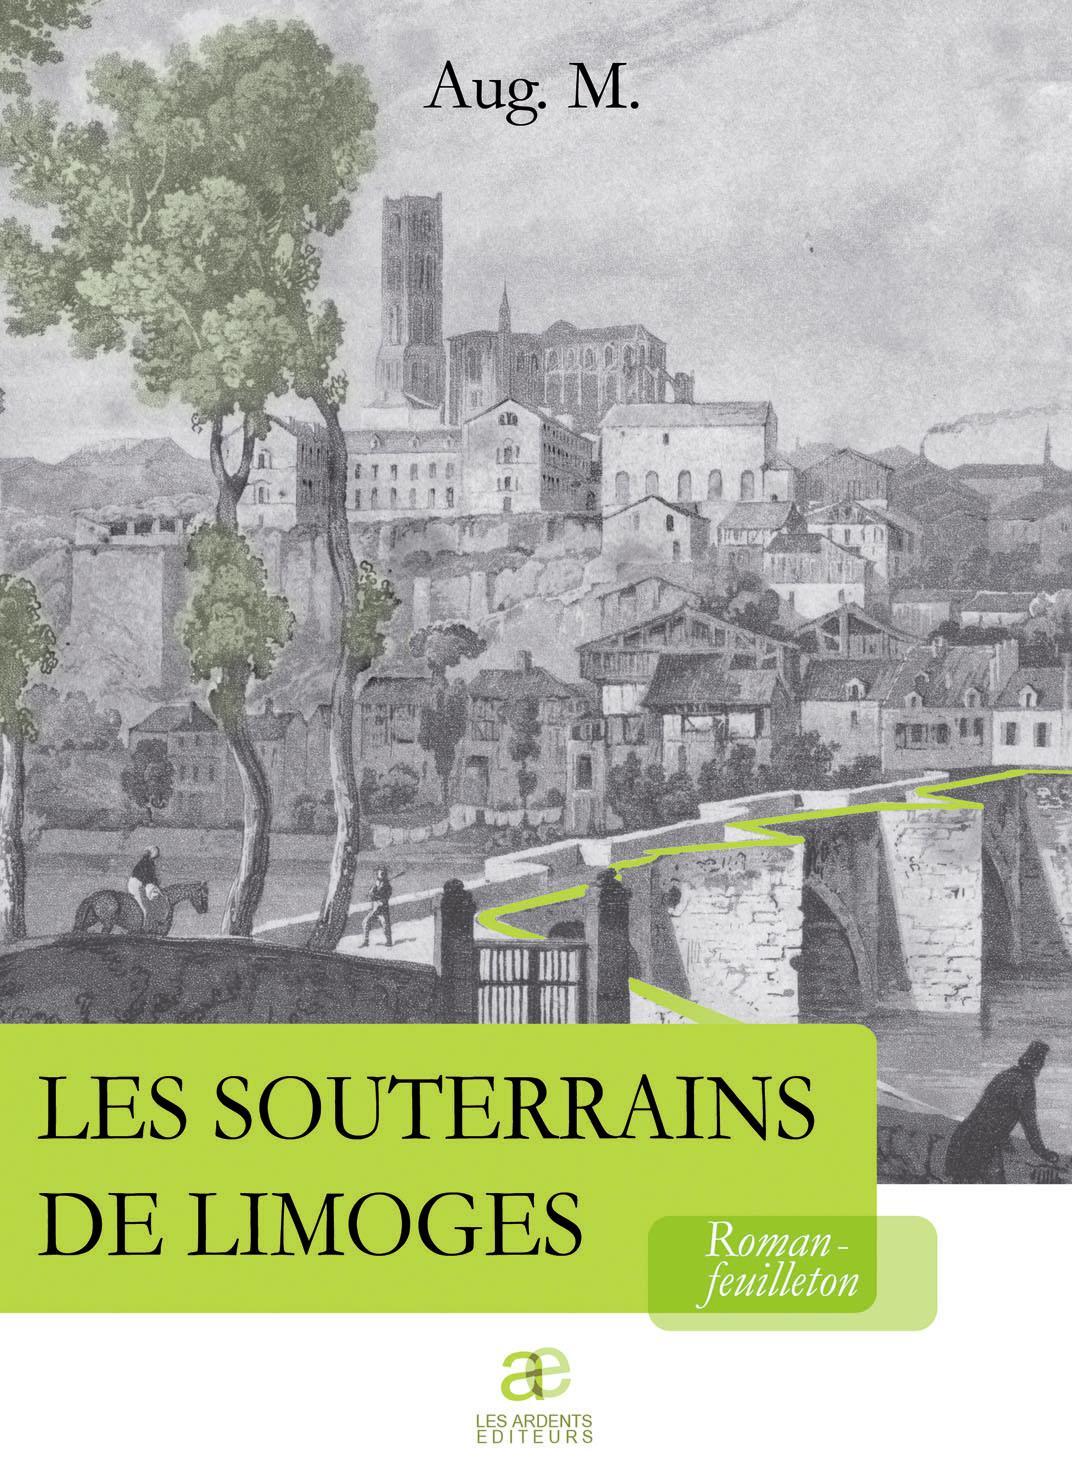 Les Souterrains de Limoges